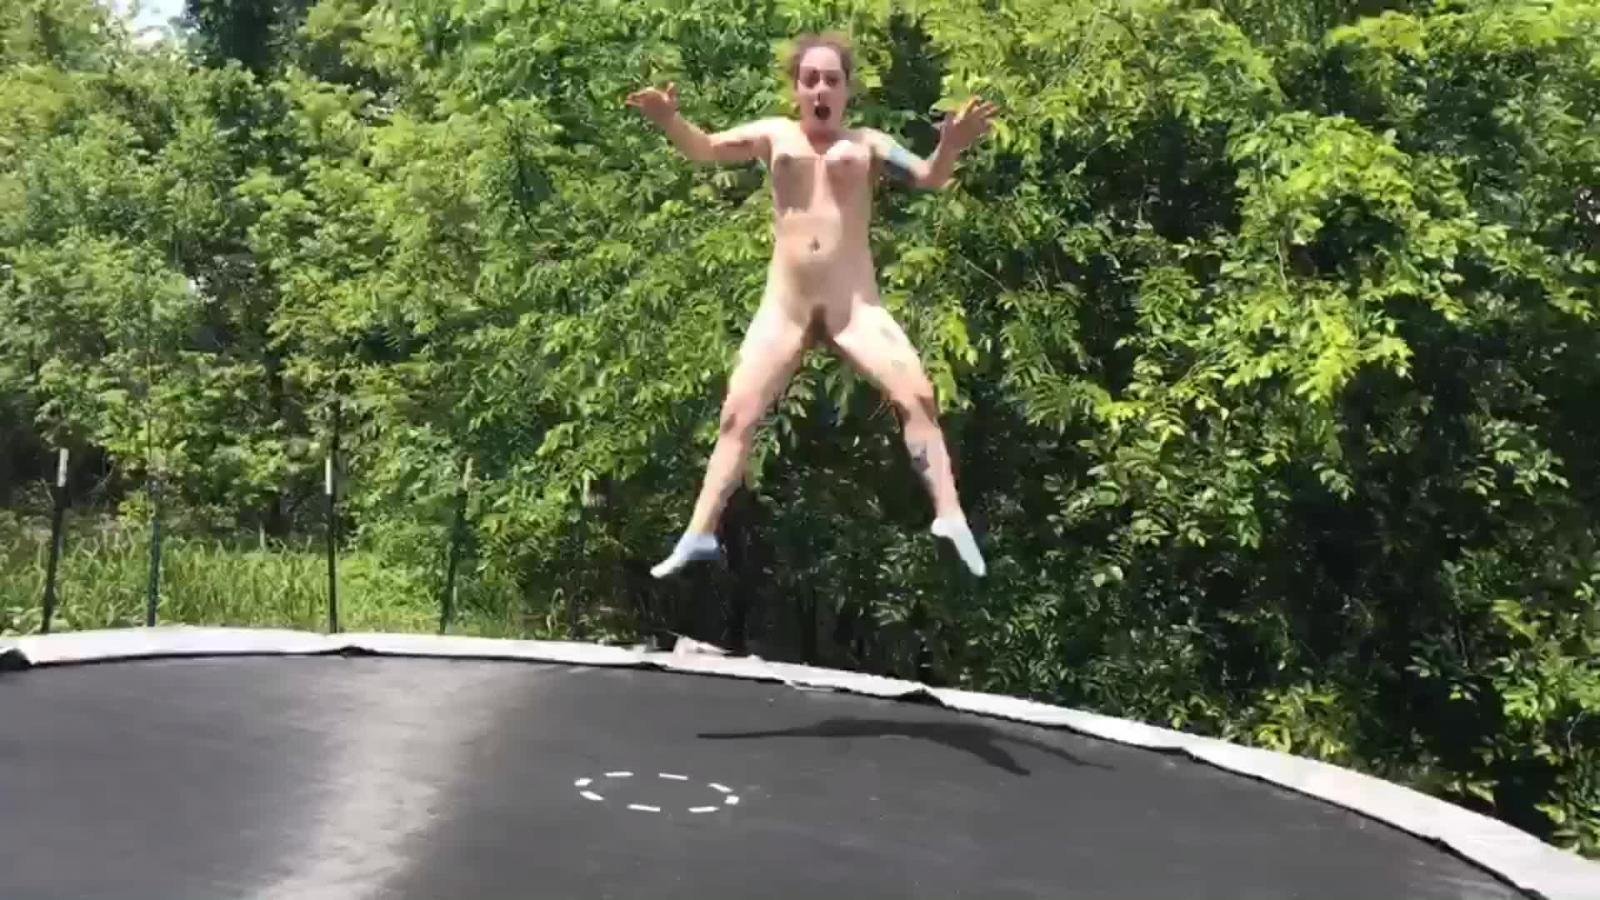 голая девушка прыгает на батуте